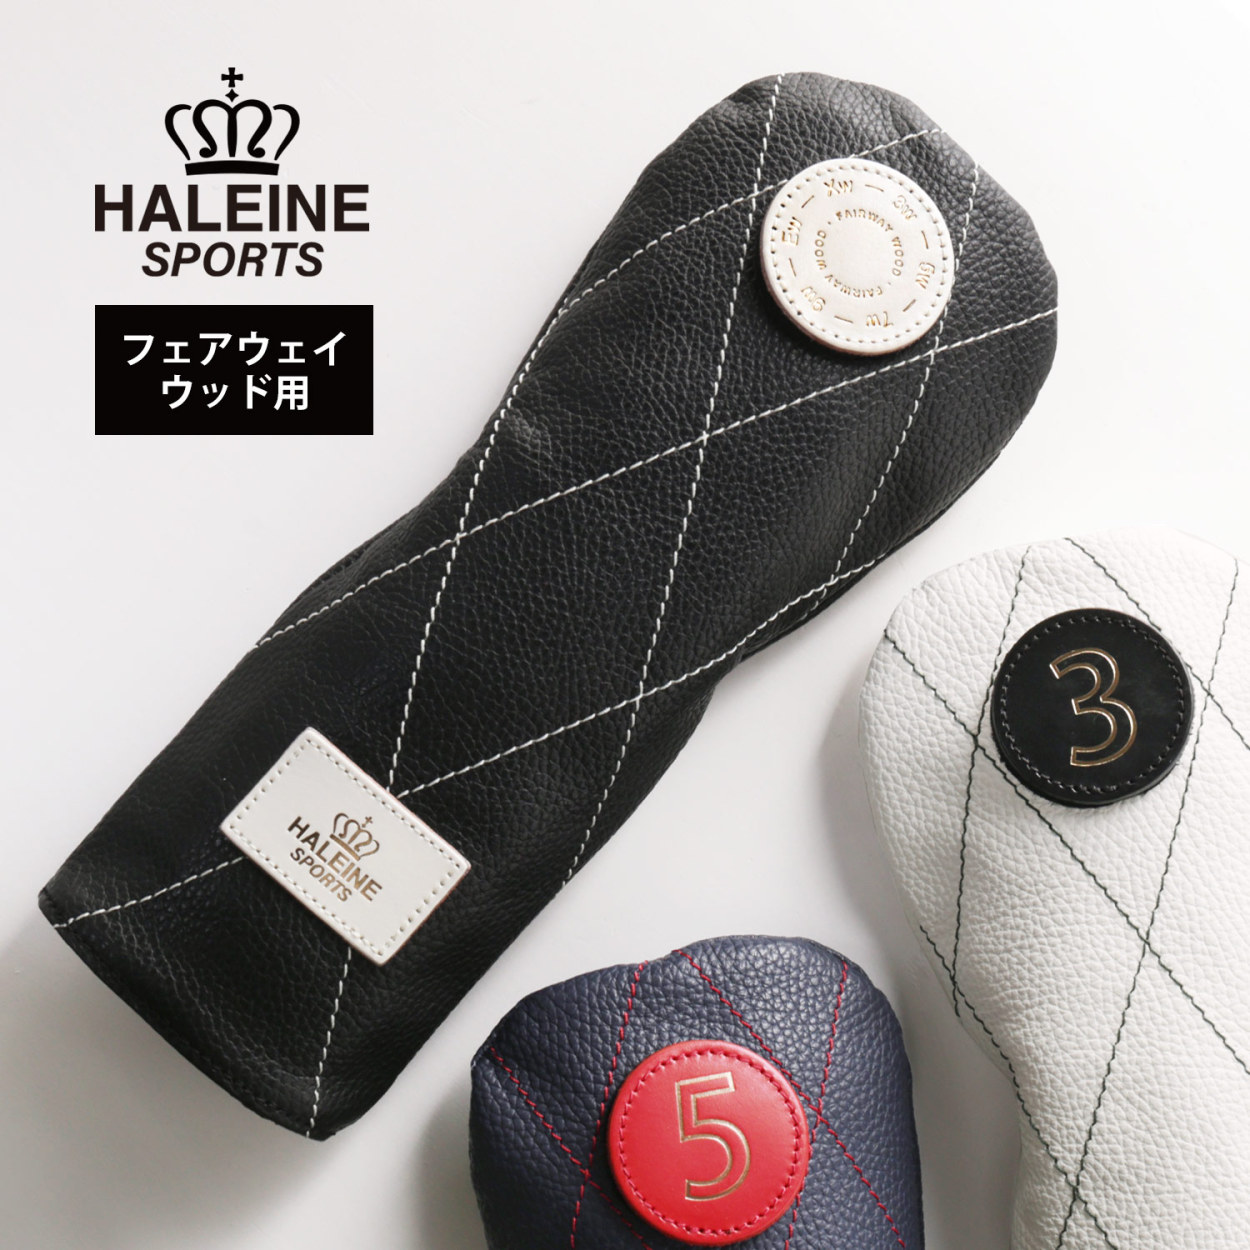 HALEINE SPORTS ゴルフ レザー ヘッドカバー フェアウェイウッド用 ブランド メンズ レディース ユニセックス 日本製(07000422r)